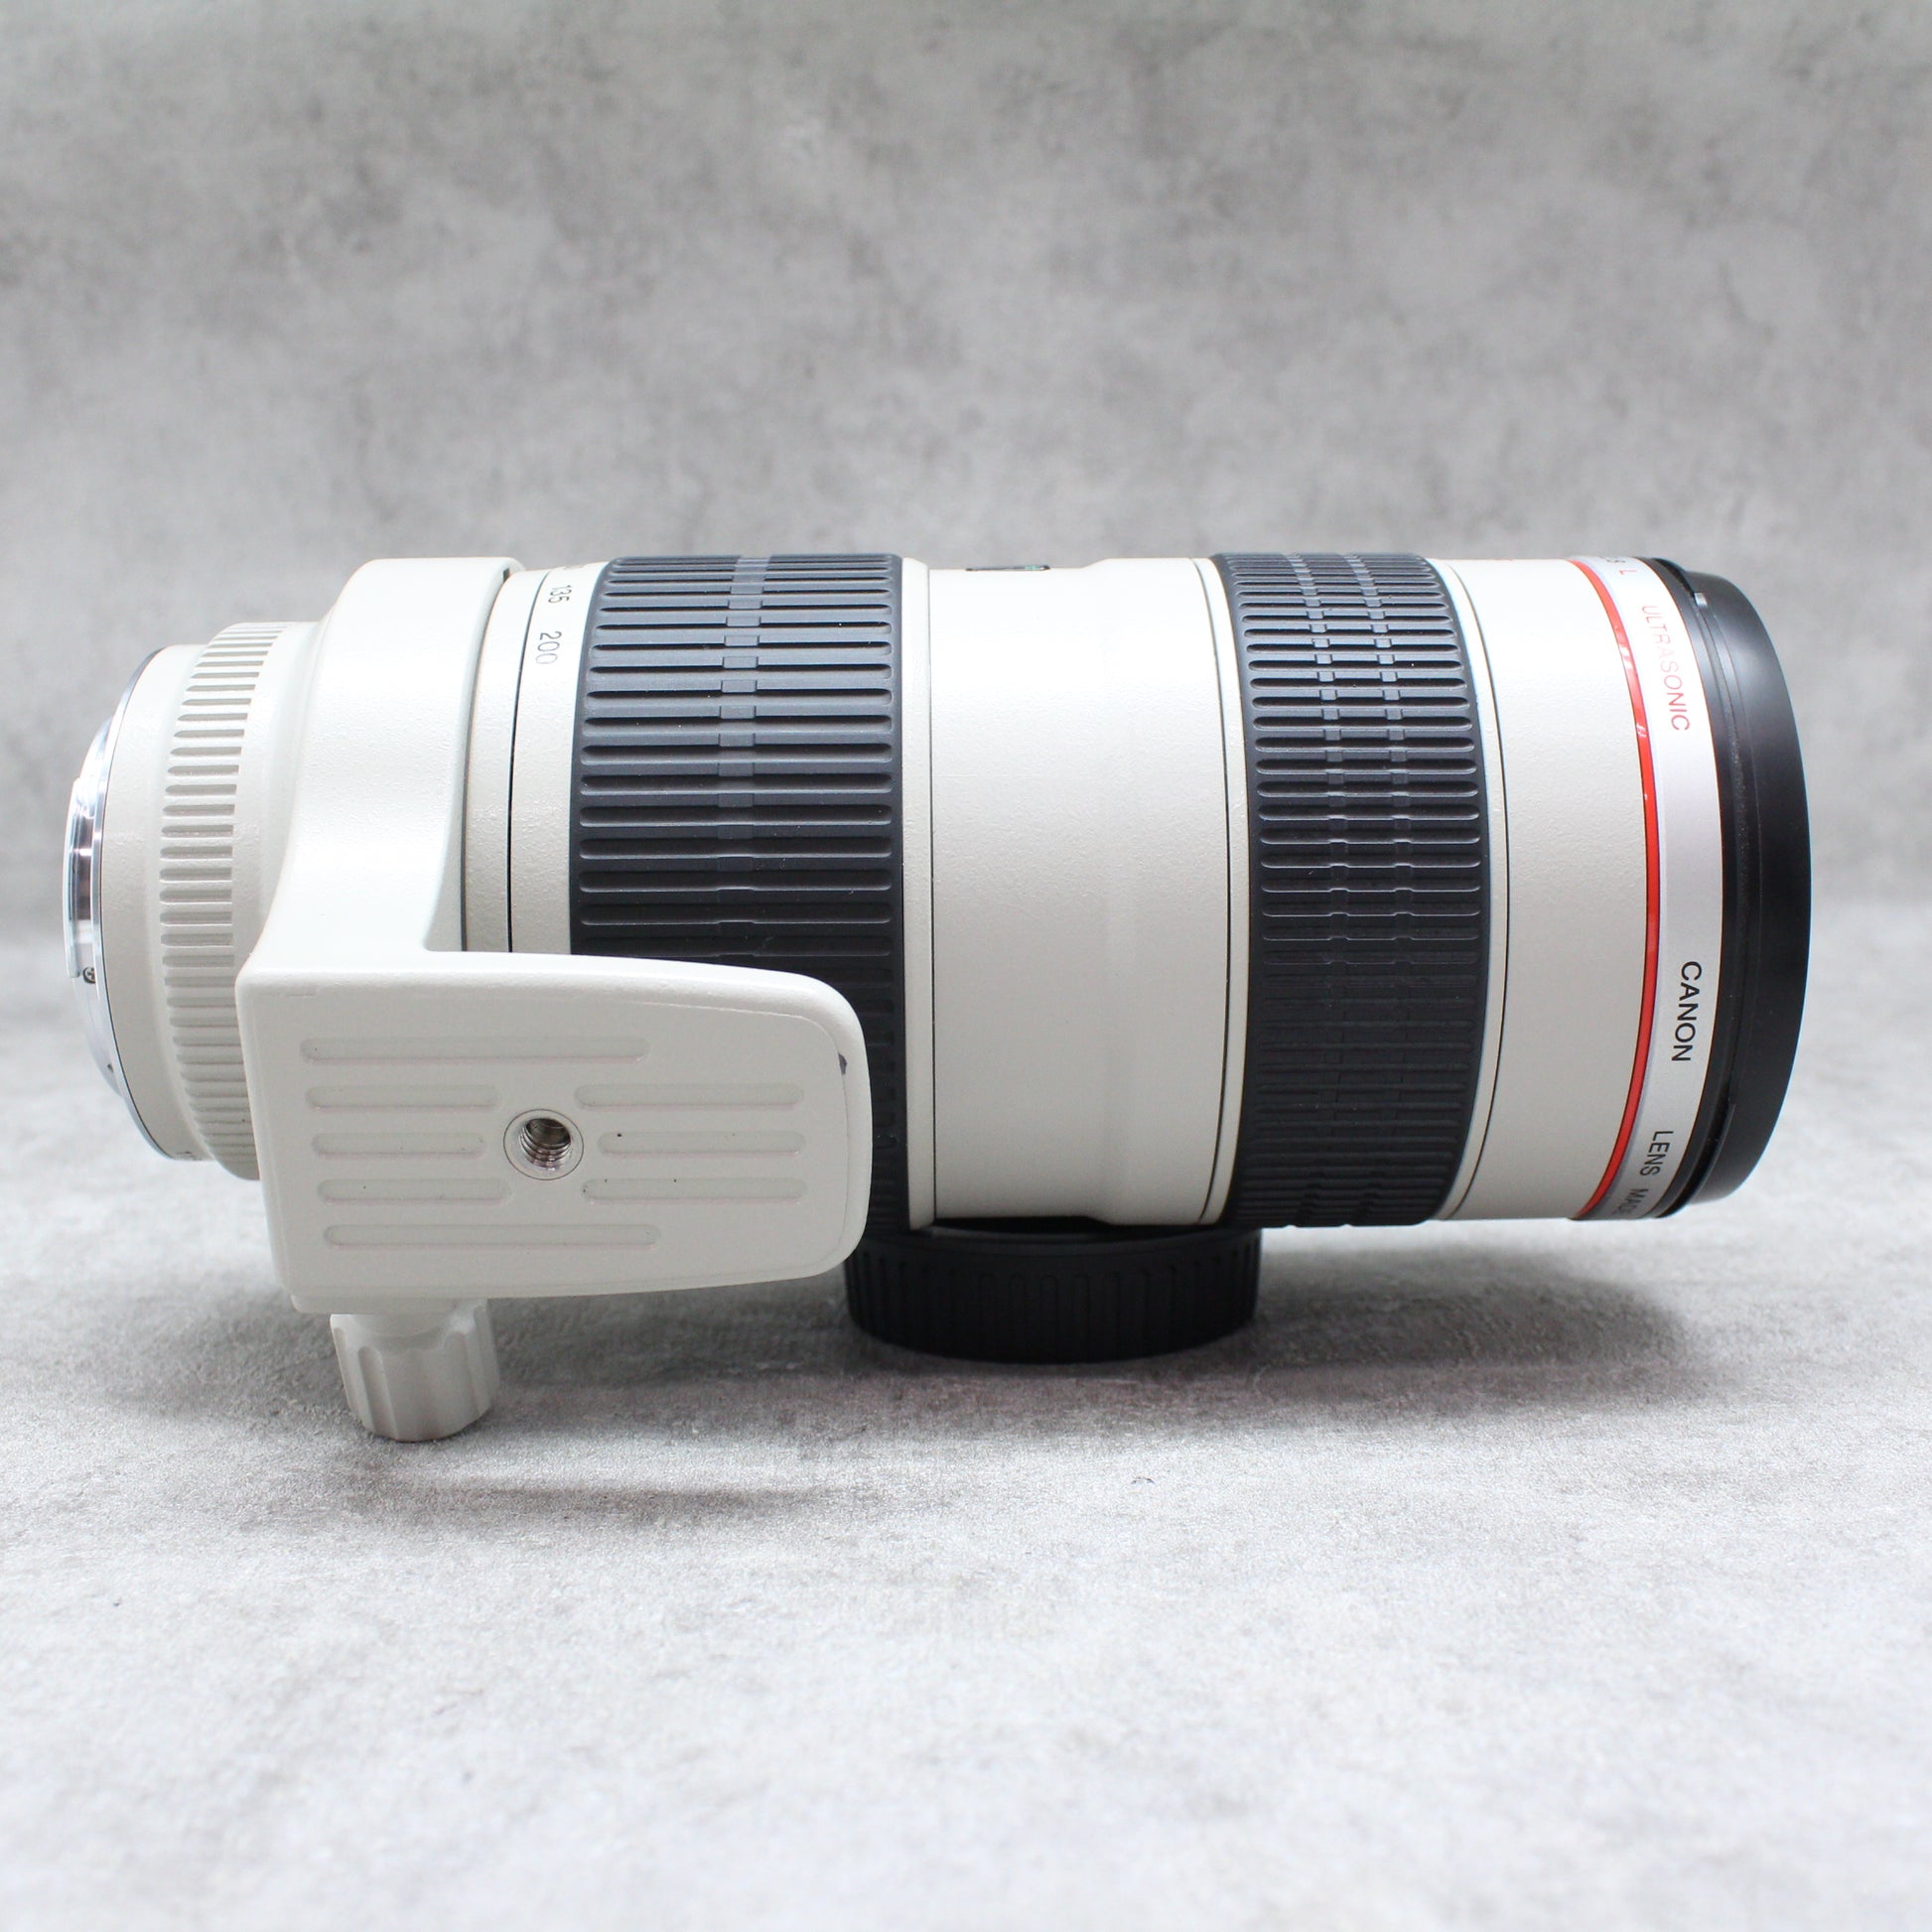 中古品 Canon EF70-200mm F2.8L USM【9月9日(土) youtube生配信